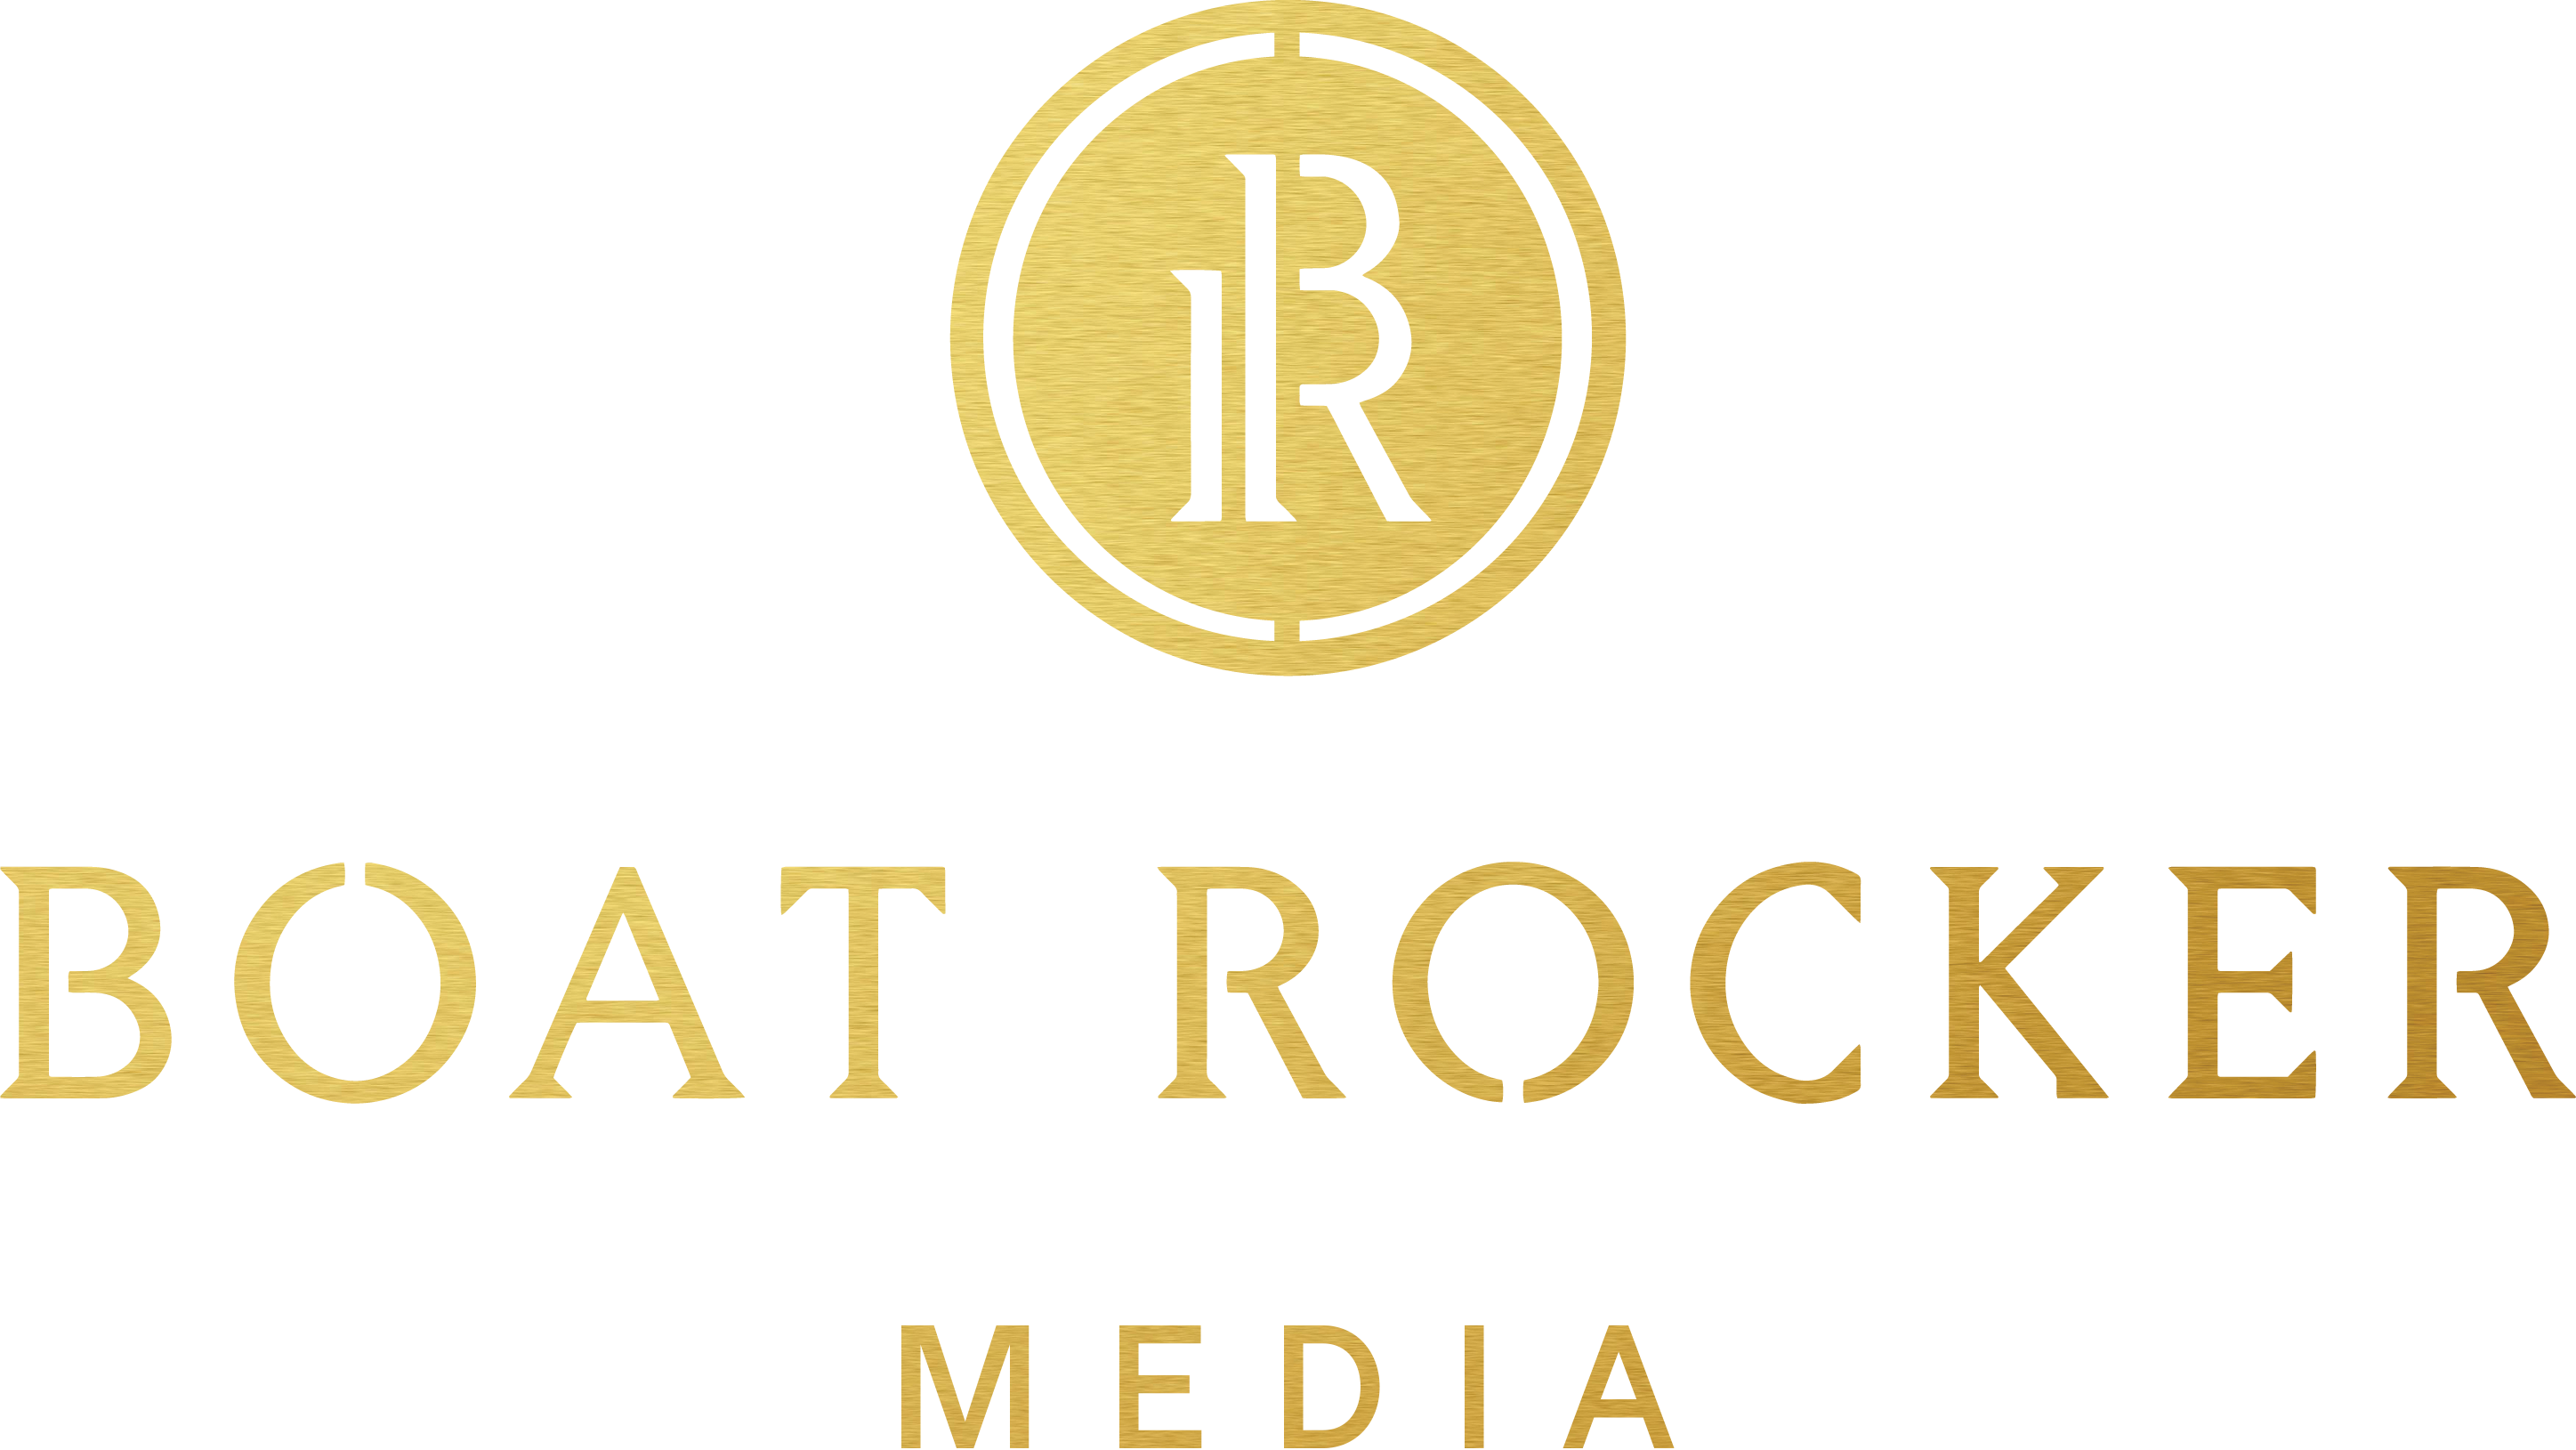 Boat Rocker Media